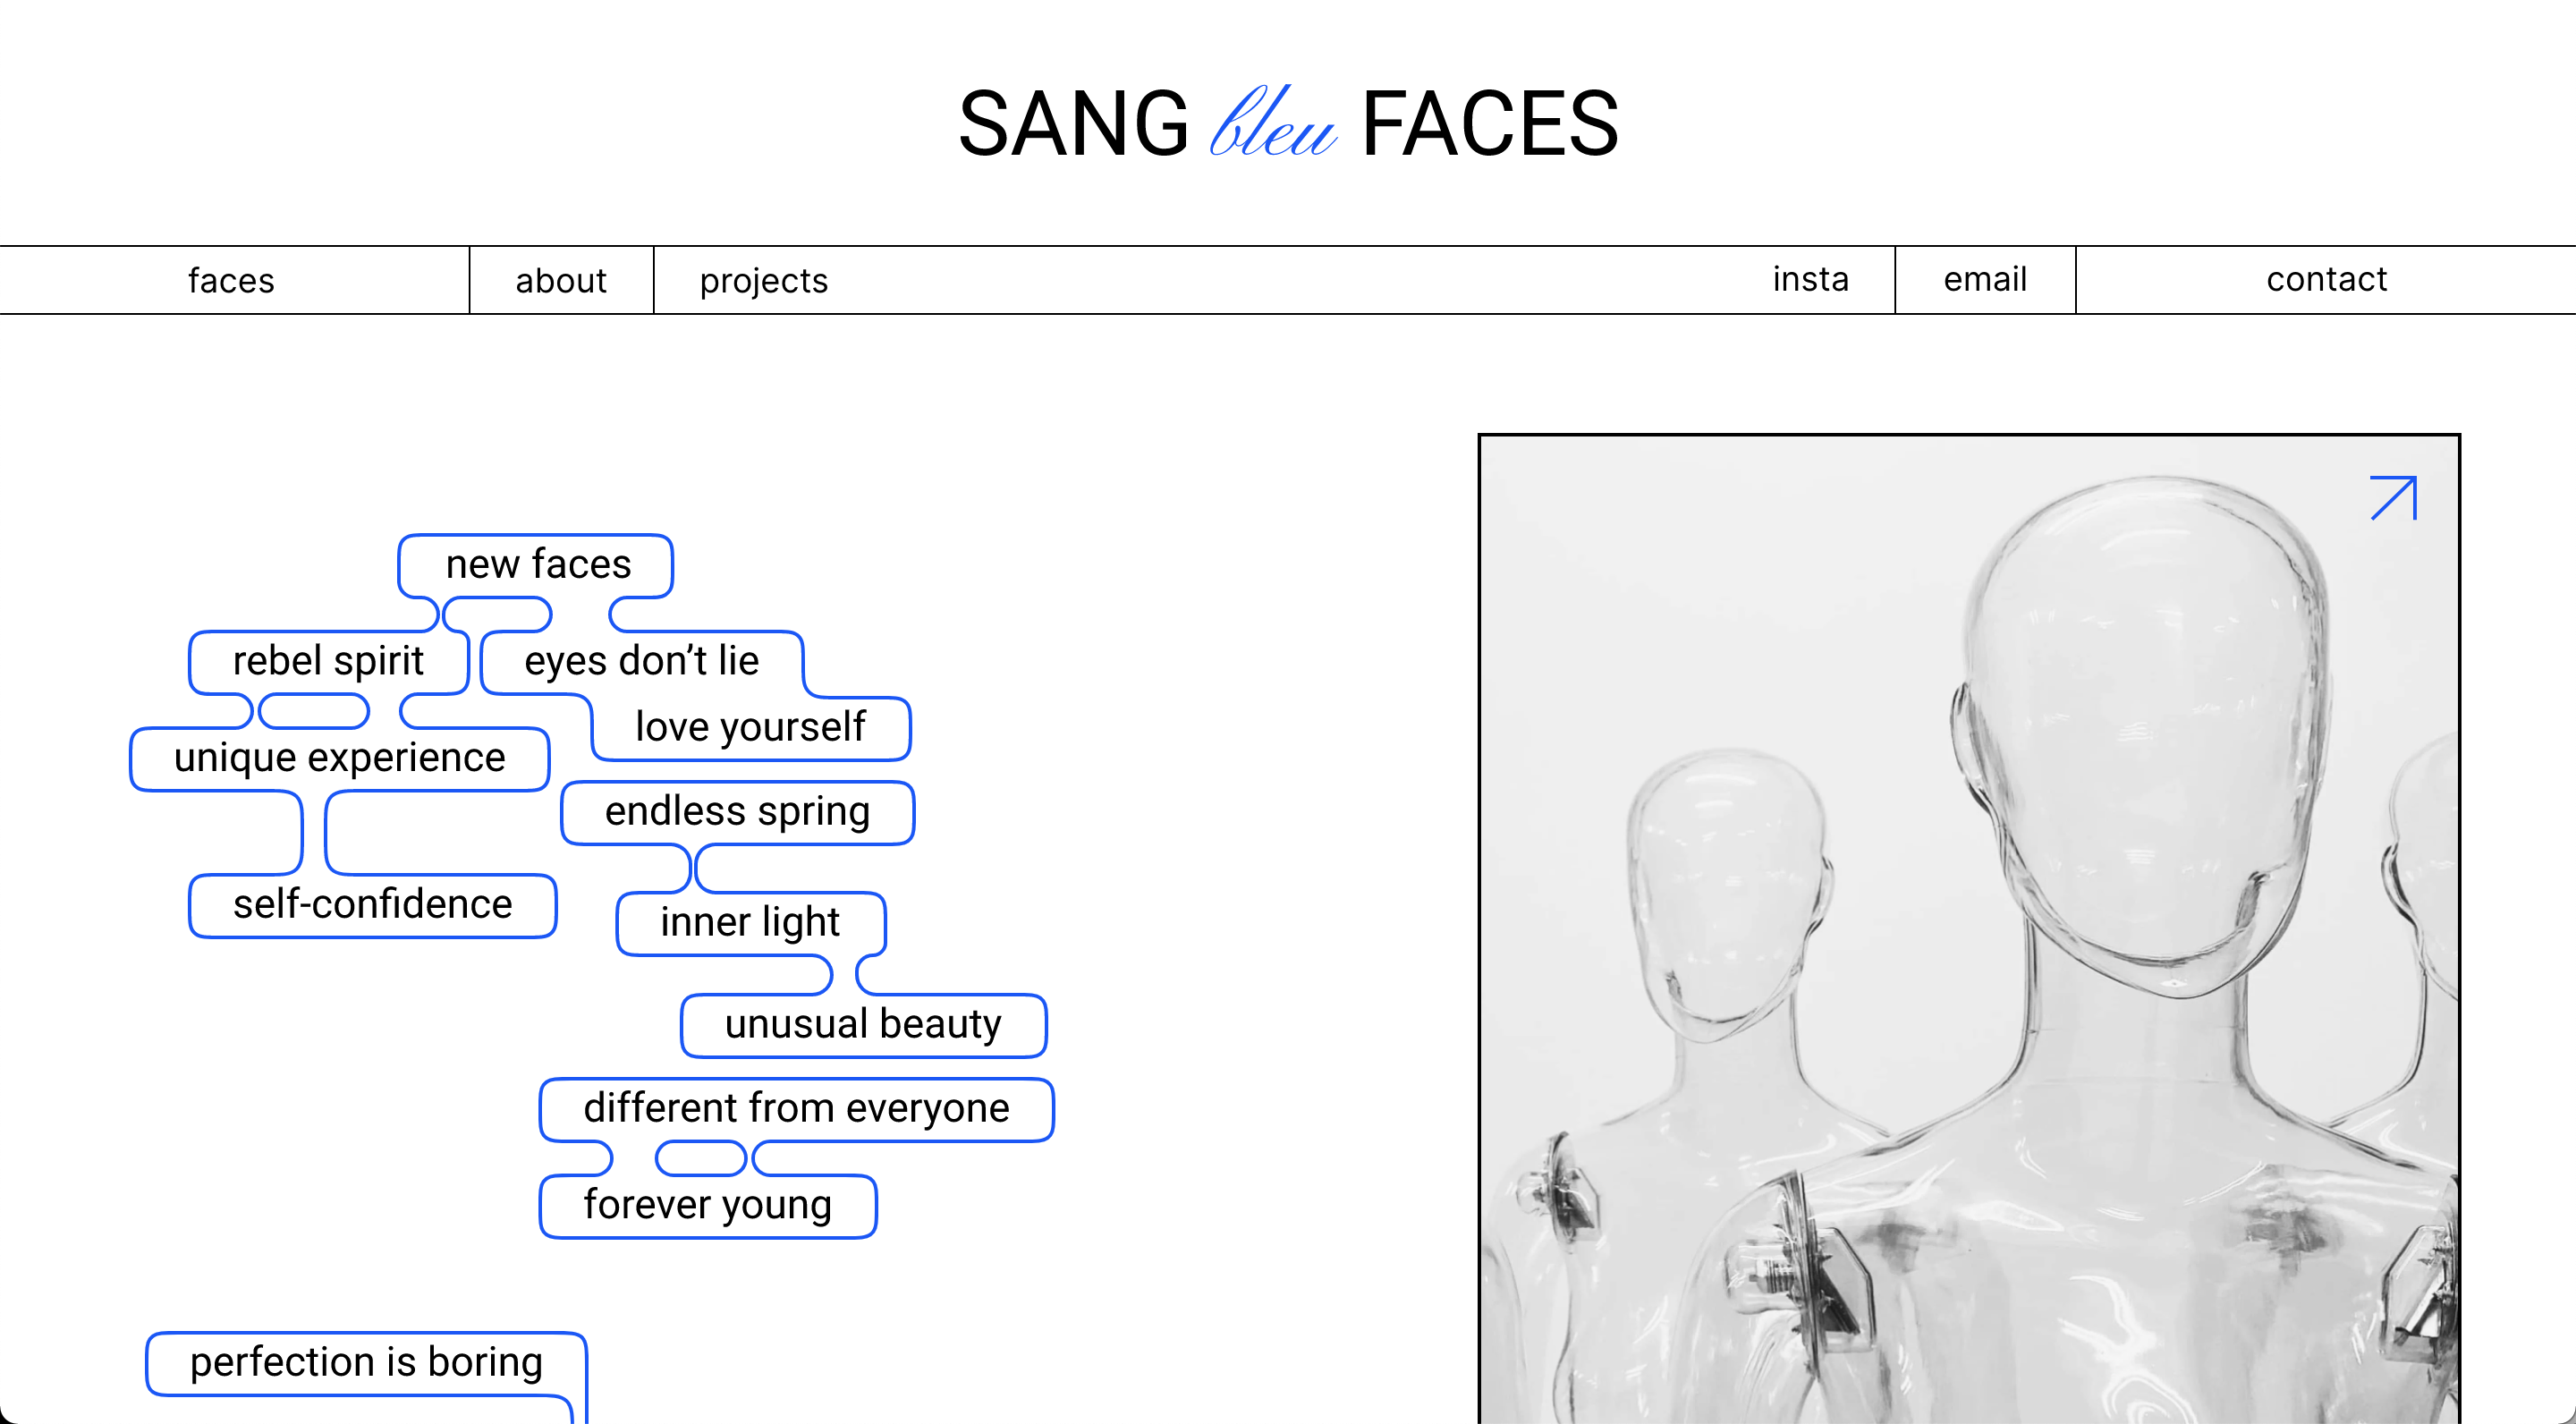 Sang Bleu Faces website